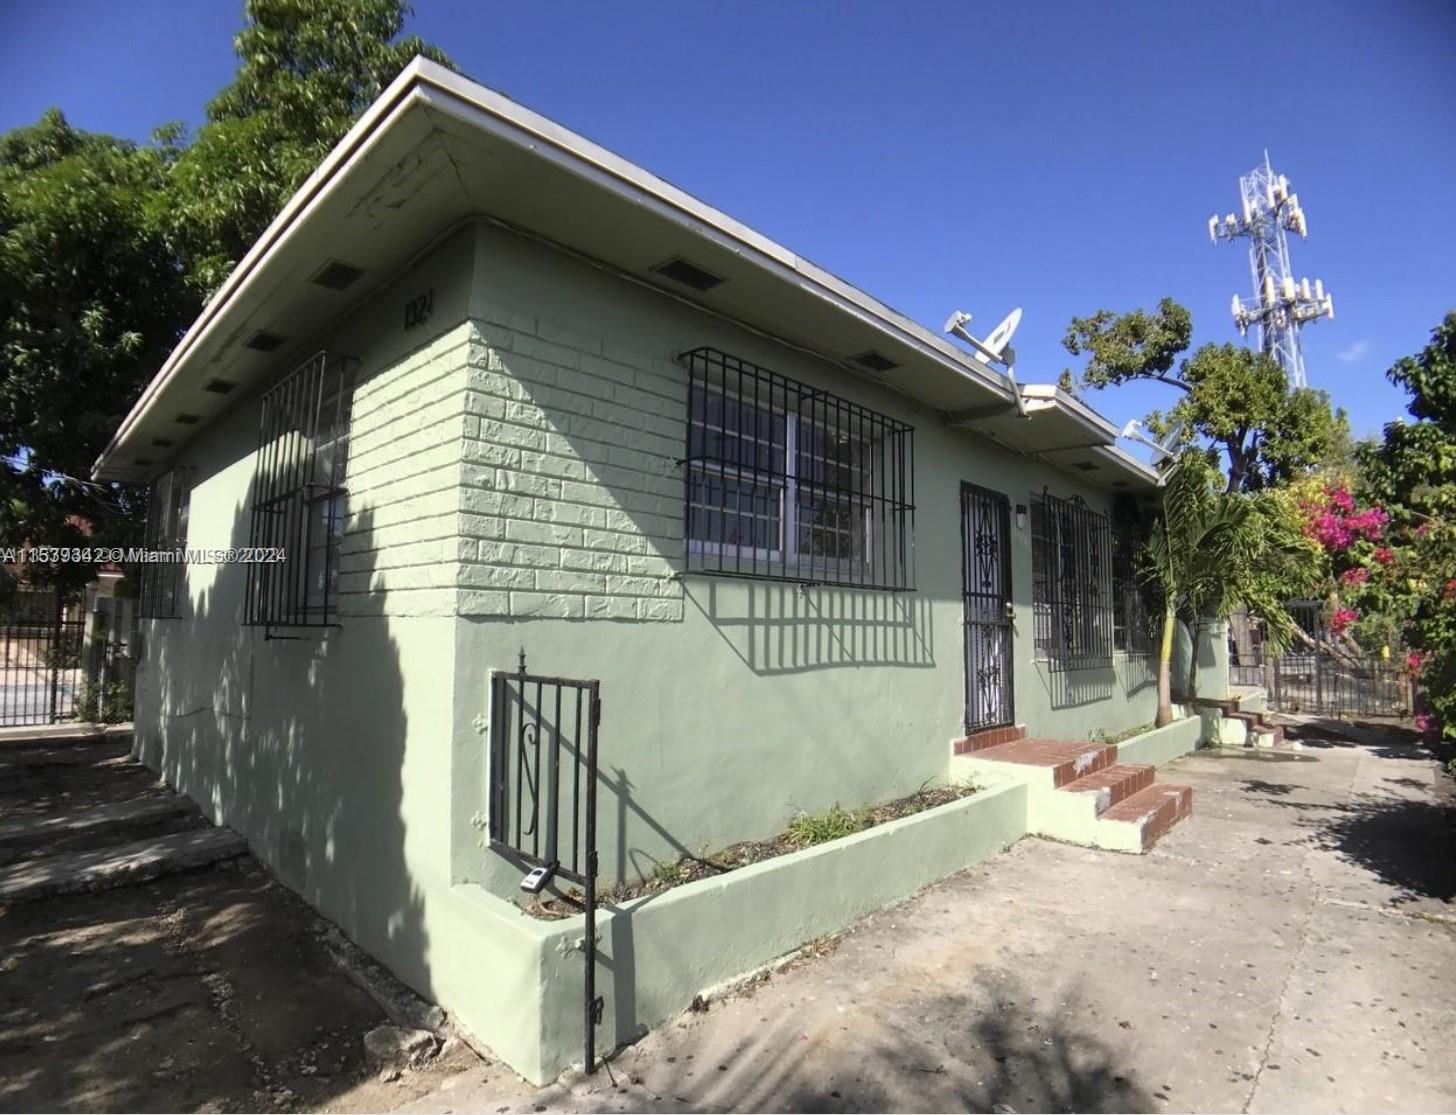 Rental Property at 1321 Nw 28th St, Miami, Broward County, Florida -  - $650,000 MO.